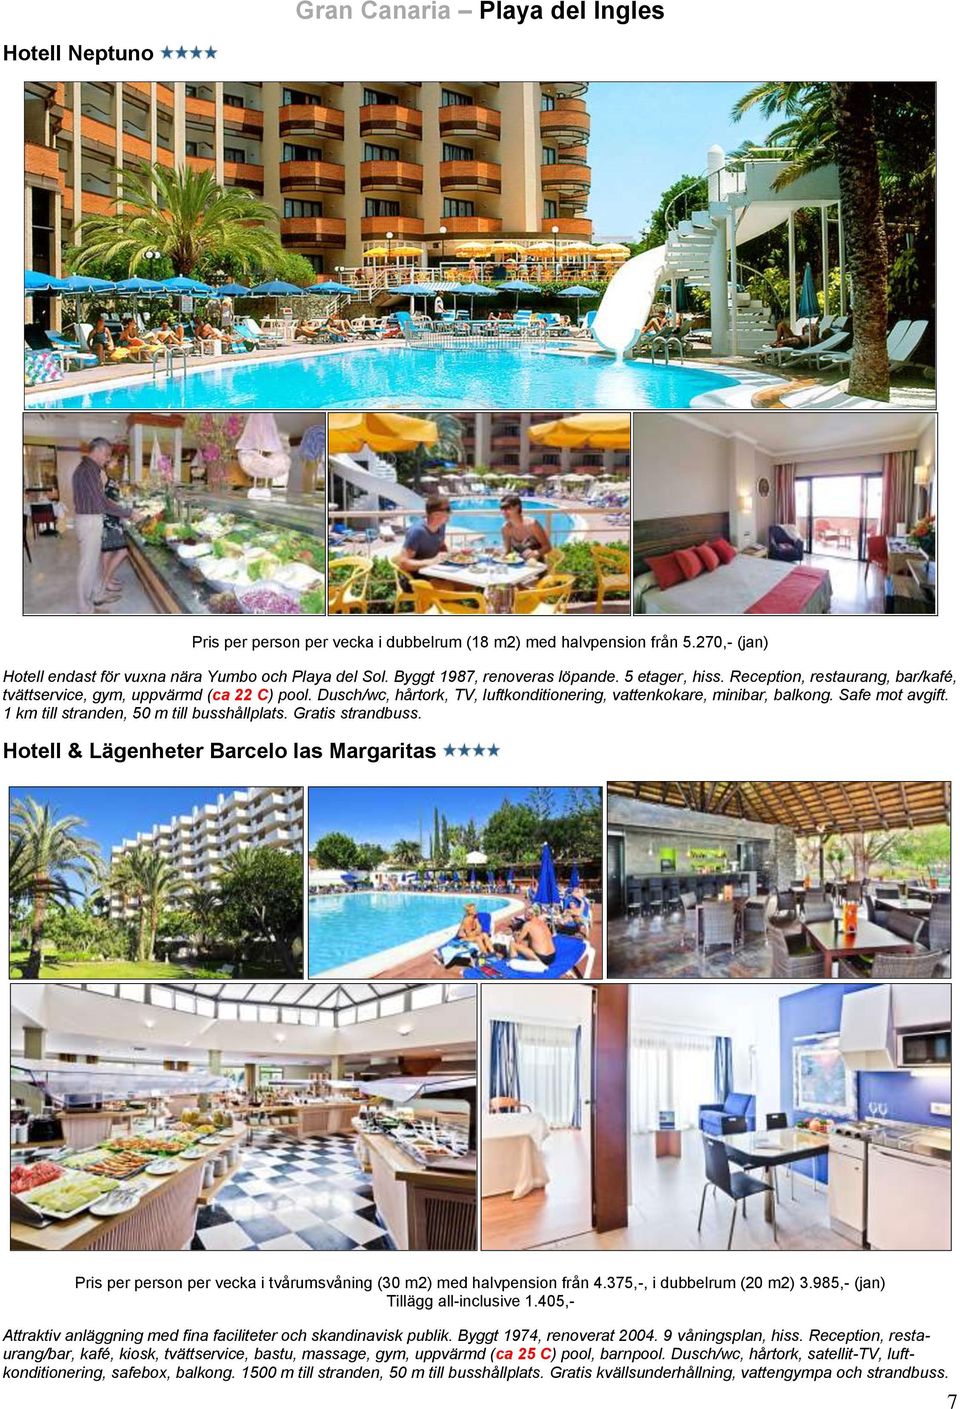 Safe mot avgift. 1 km till stranden, 50 m till busshållplats. Gratis strandbuss. Hotell & Lägenheter Barcelo las Margaritas Pris per person per vecka i tvårumsvåning (30 m2) med halvpension från 4.